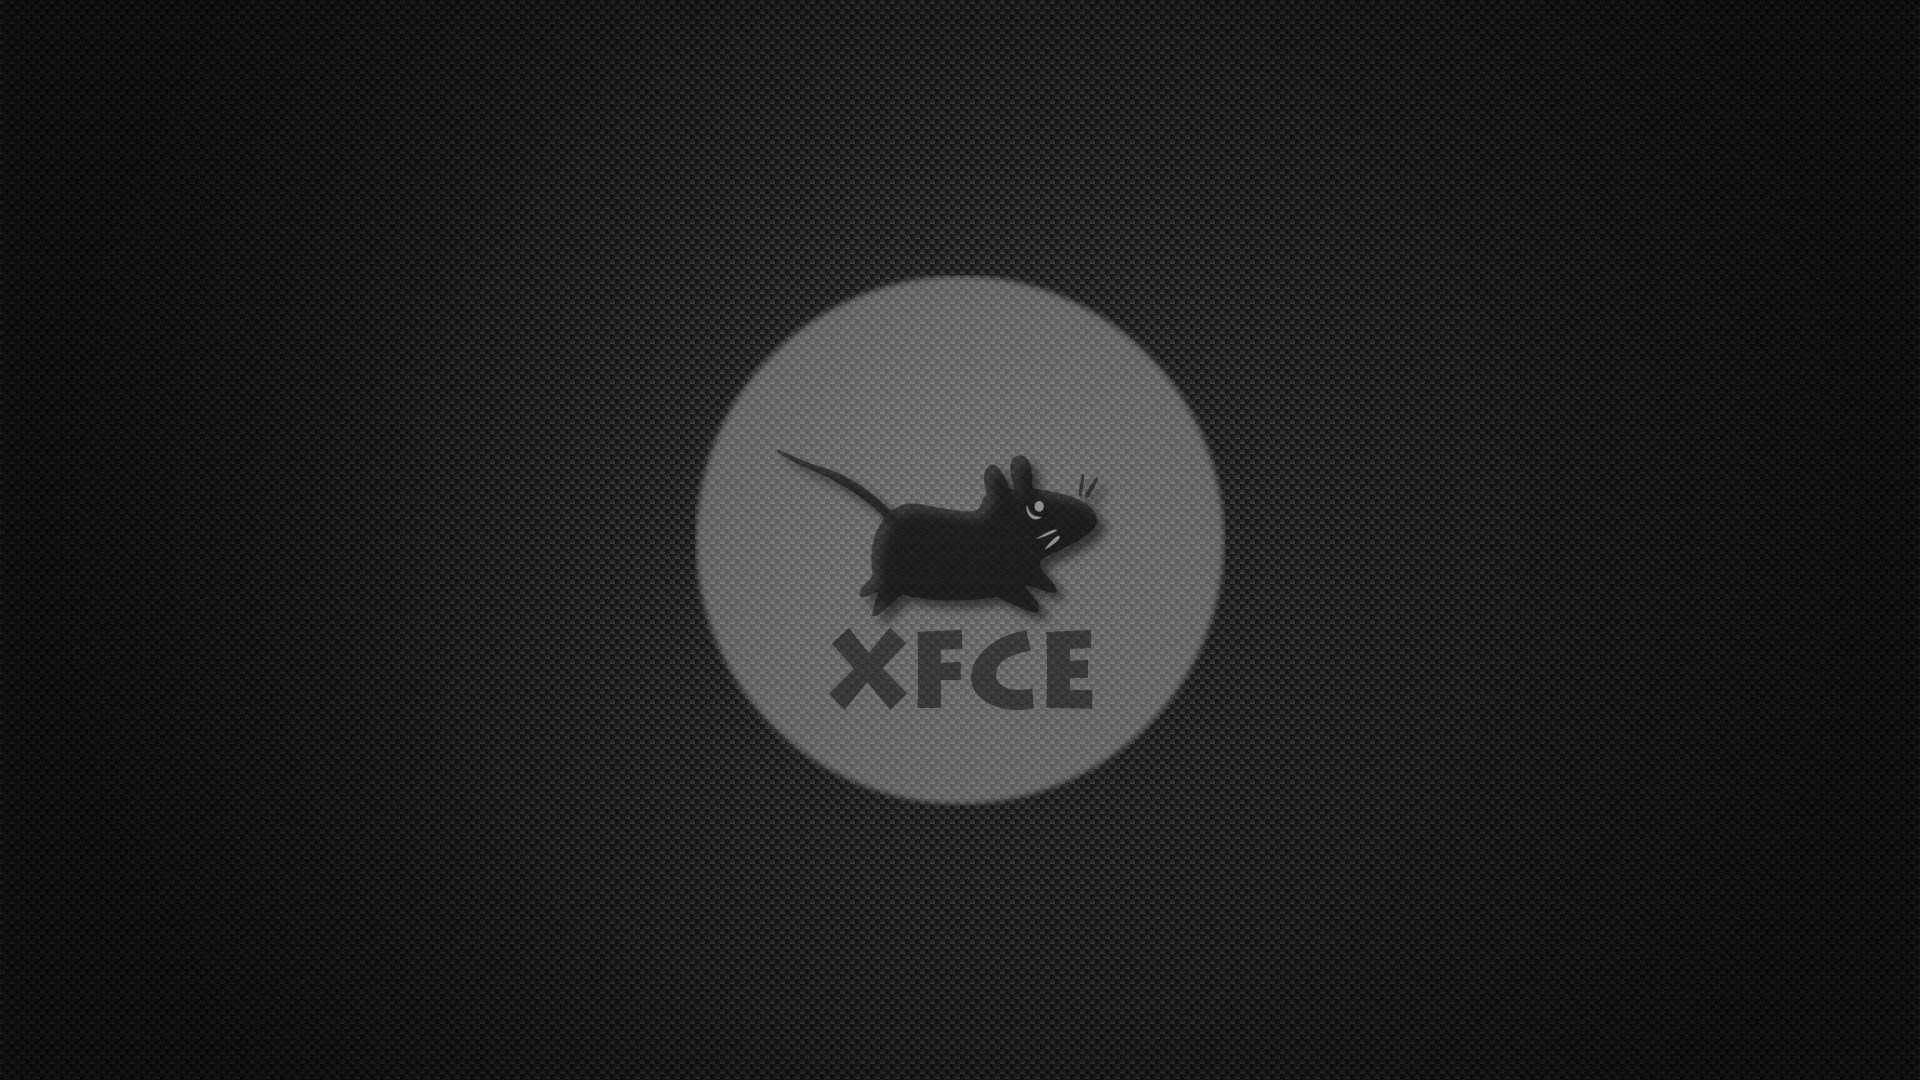 XFCE Logo Wallpaper là một lựa chọn hoàn hảo để trang trí cho thiết bị của bạn. Hãy xem hình ảnh liên quan để khám phá những tùy chọn tuyệt đẹp về hình nền Logo XFCE.